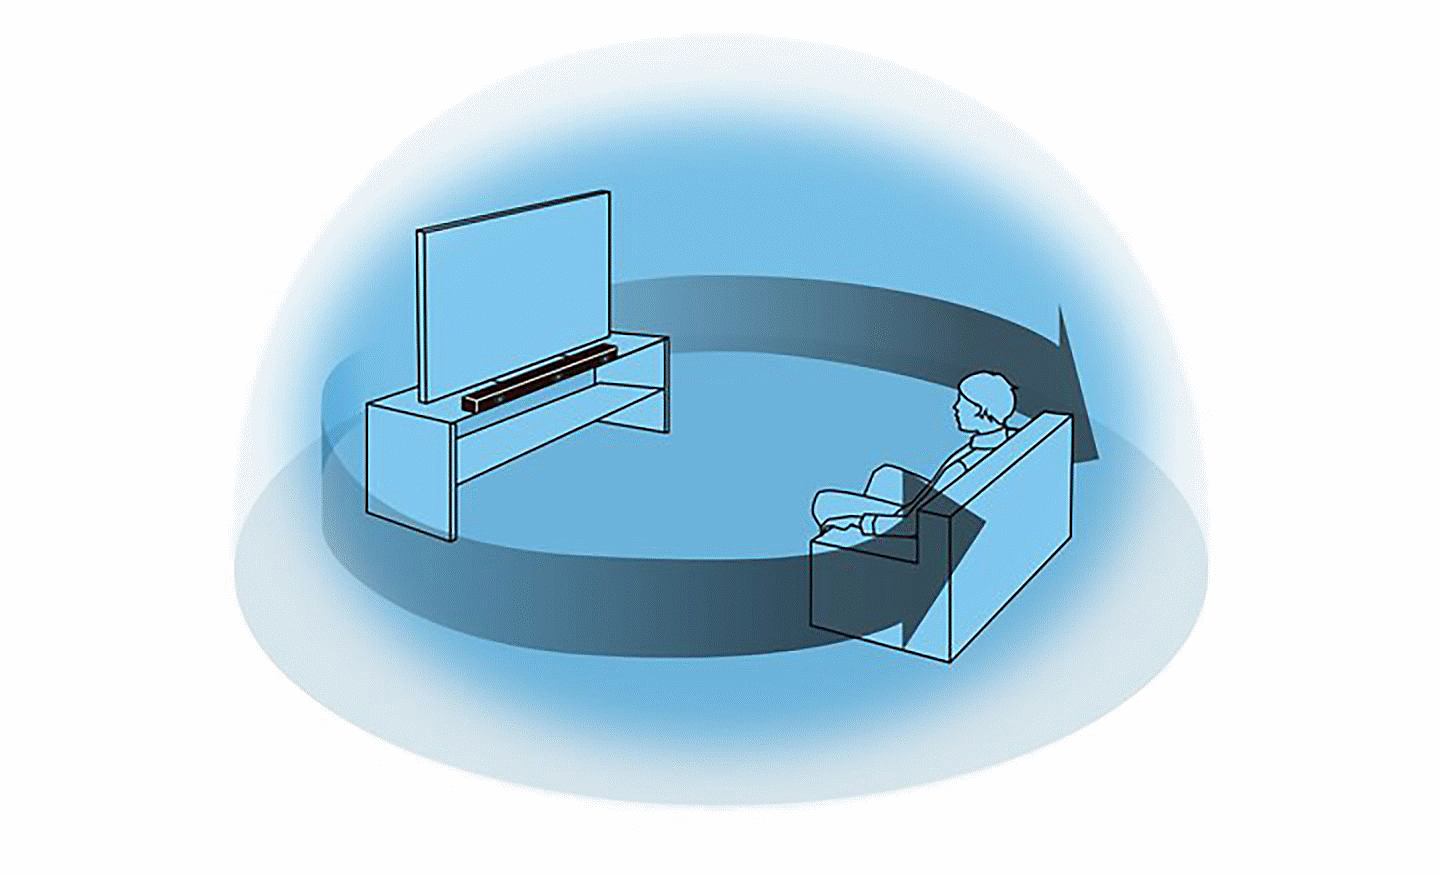 Slika plave kugle unutar koje sedi osoba ispred TV-a i soundbara, dve savijene strelice se protežu od TV-a do osobe